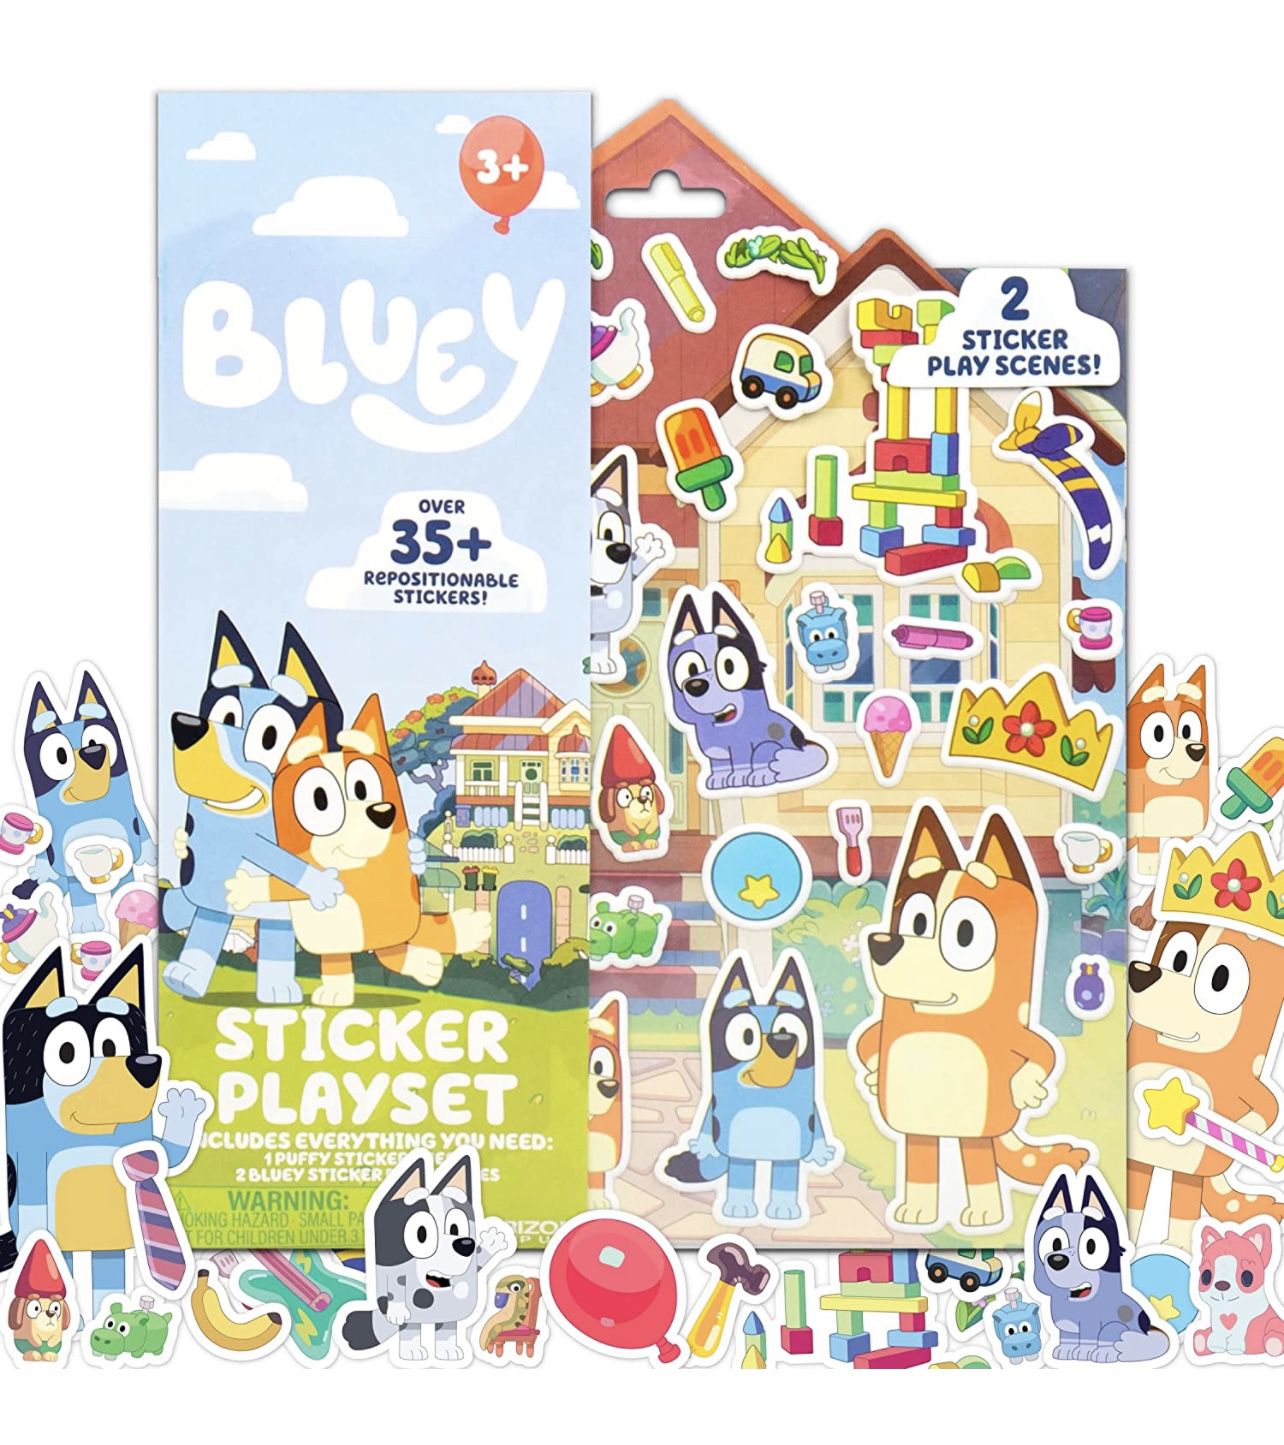 Bluey and Bingo Sticker - MireiaFdzArt's Ko-fi Shop